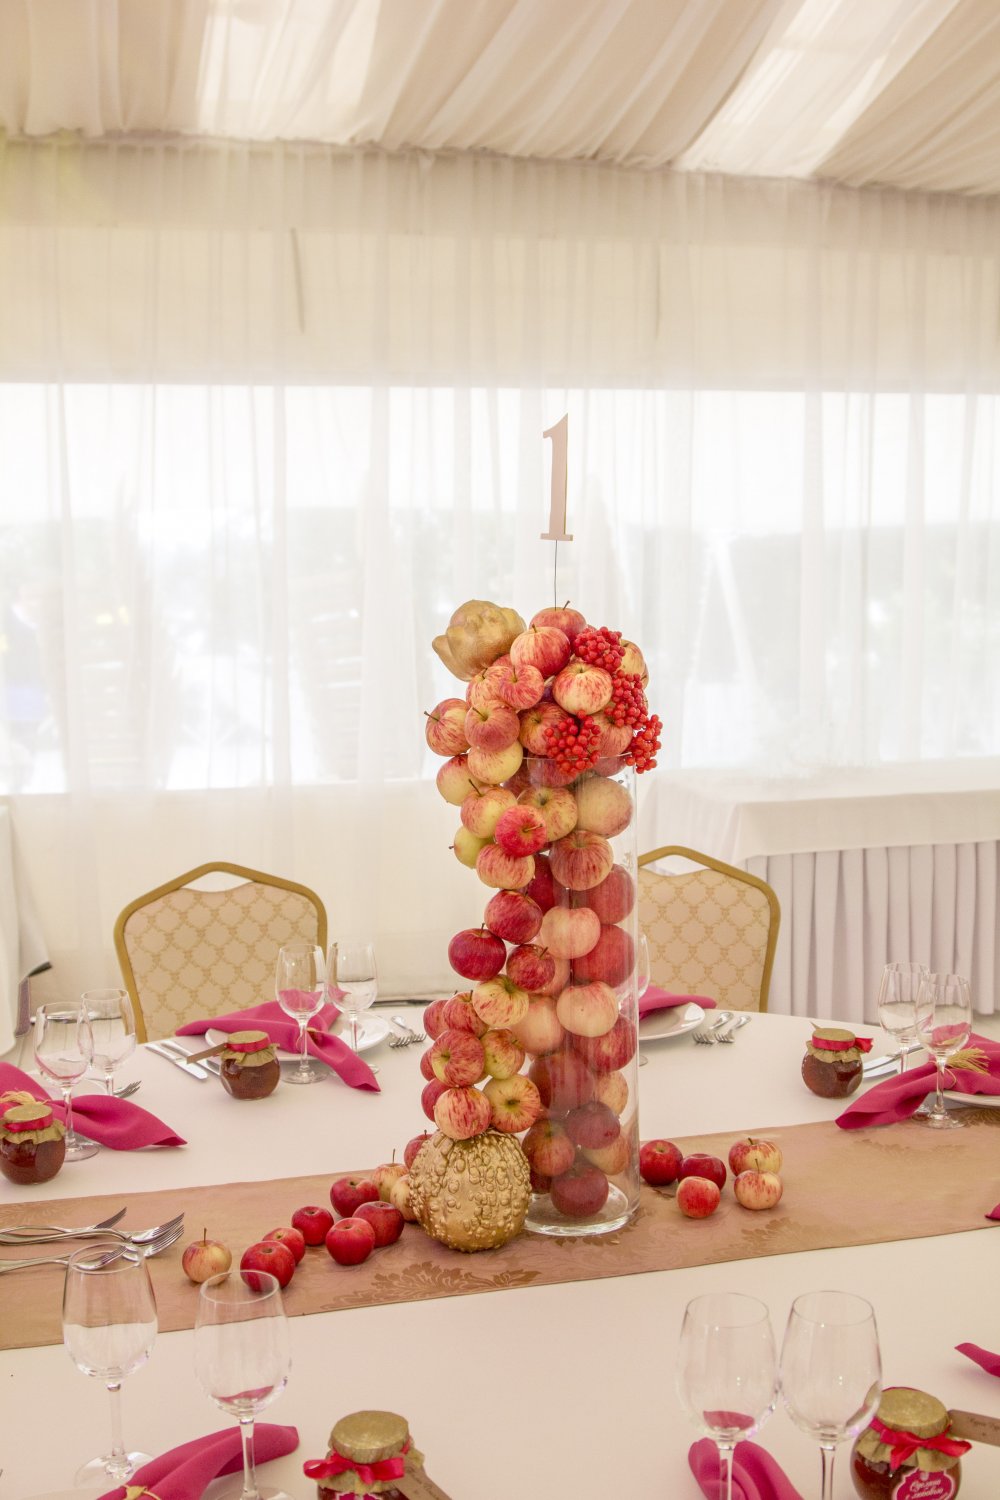 Яблочный декор гостевых столов и сервировка в осеннем стиле